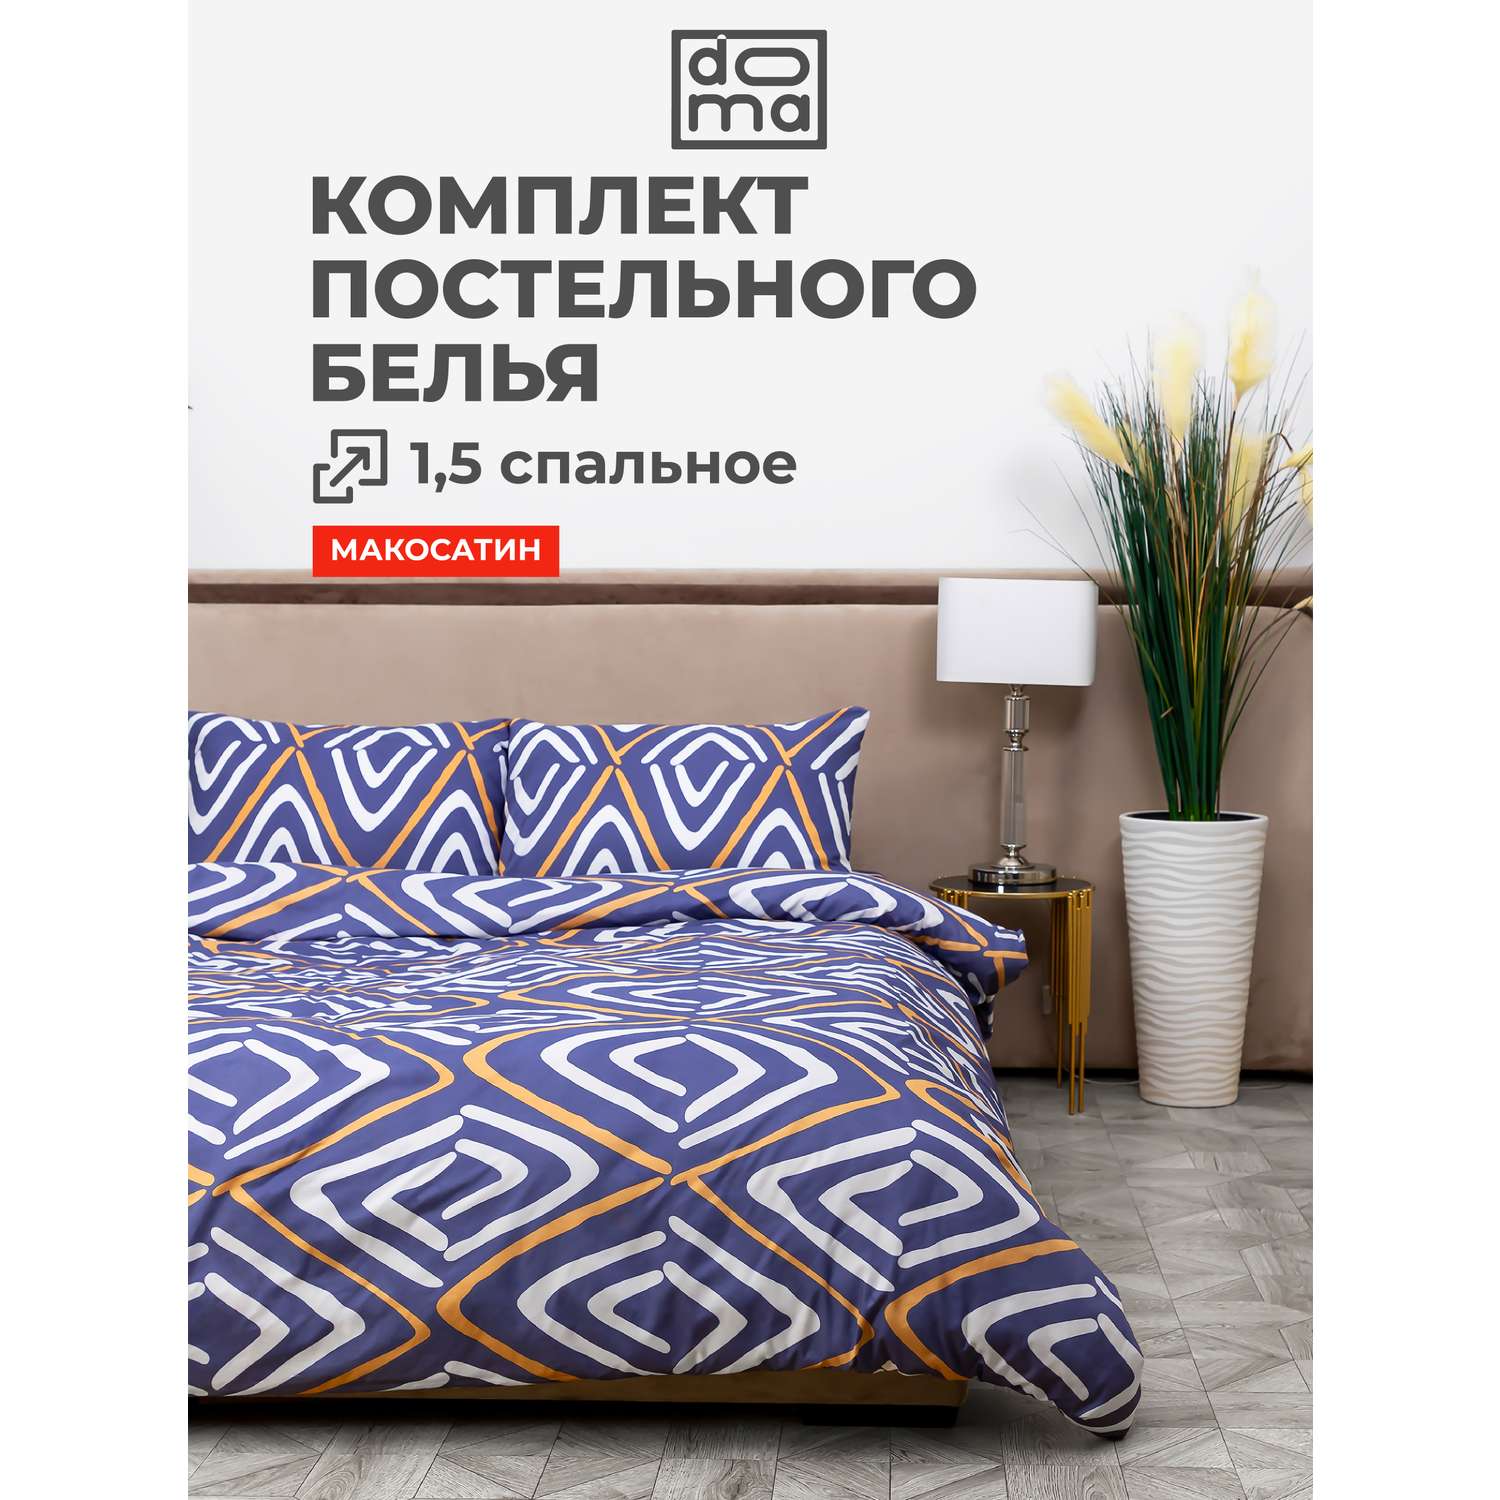 Комплект постельного белья Doma КПБ 1.5сп Avacha микрофибра - фото 1